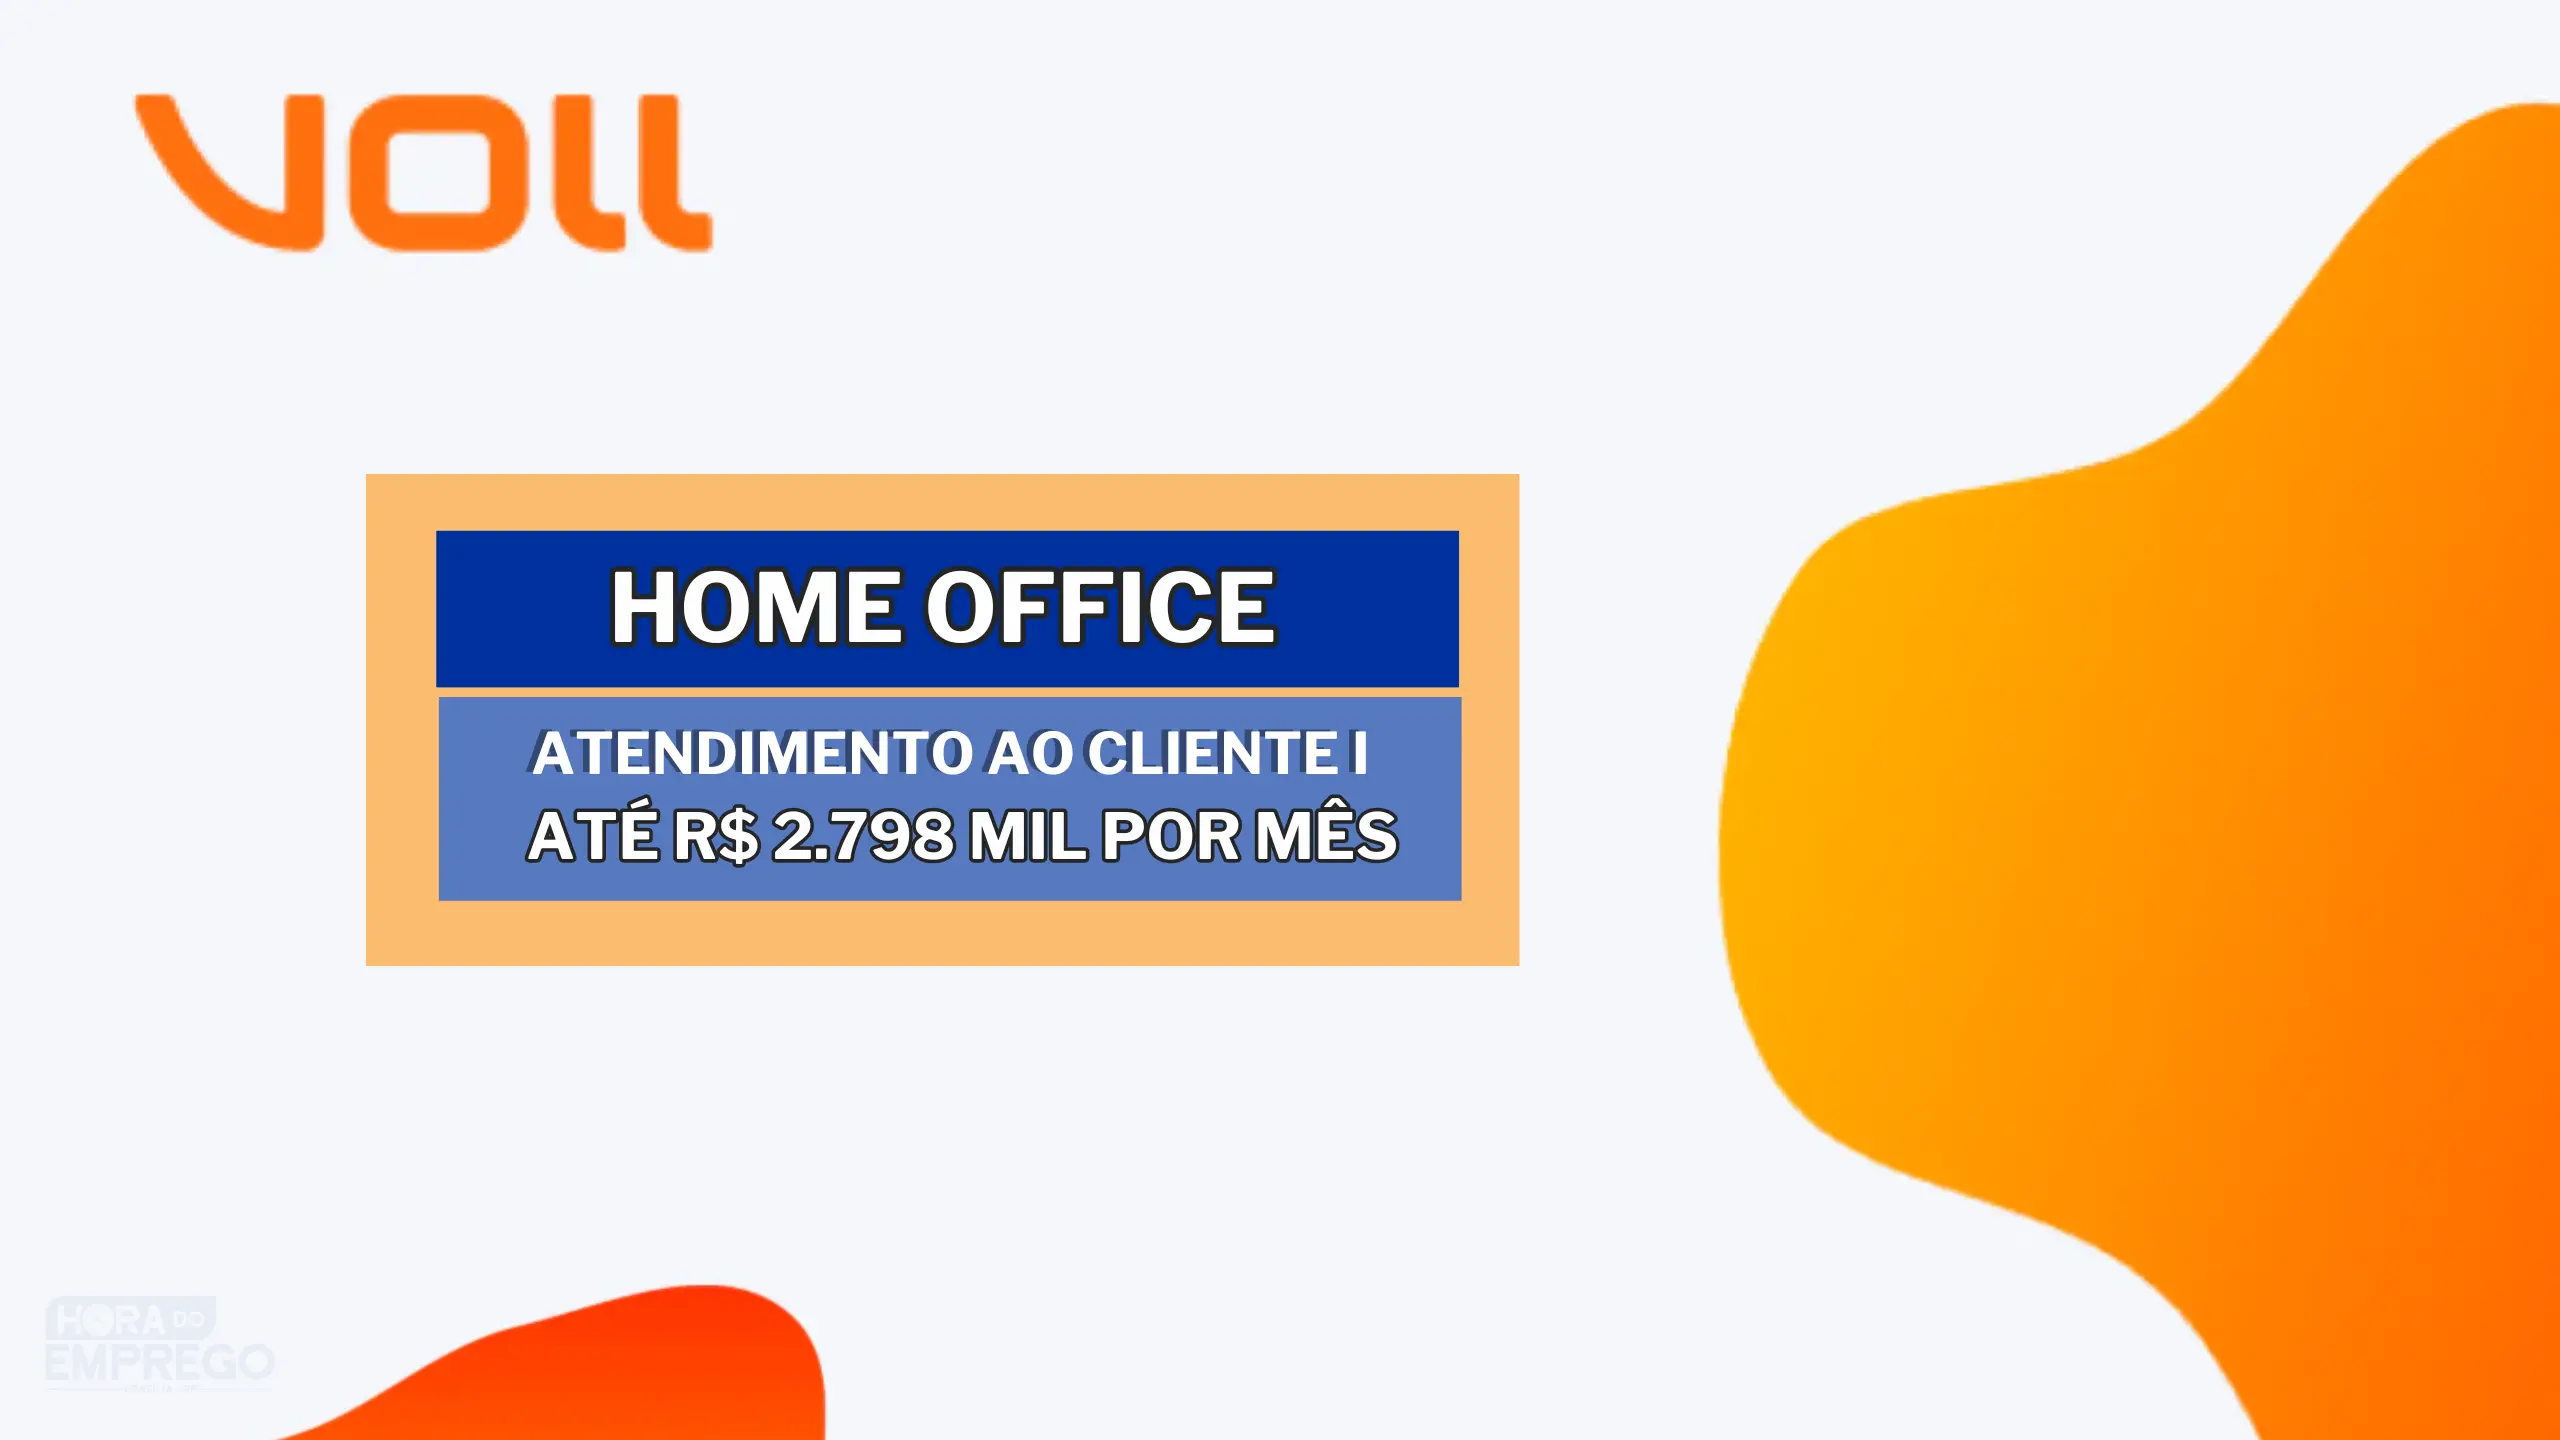 VOLL abriu vaga HOME OFFICE para Atendimento ao Cliente I e garante Férias a partir de 6 meses; Salario pode chegar até R$ 2.798 MIL por mês